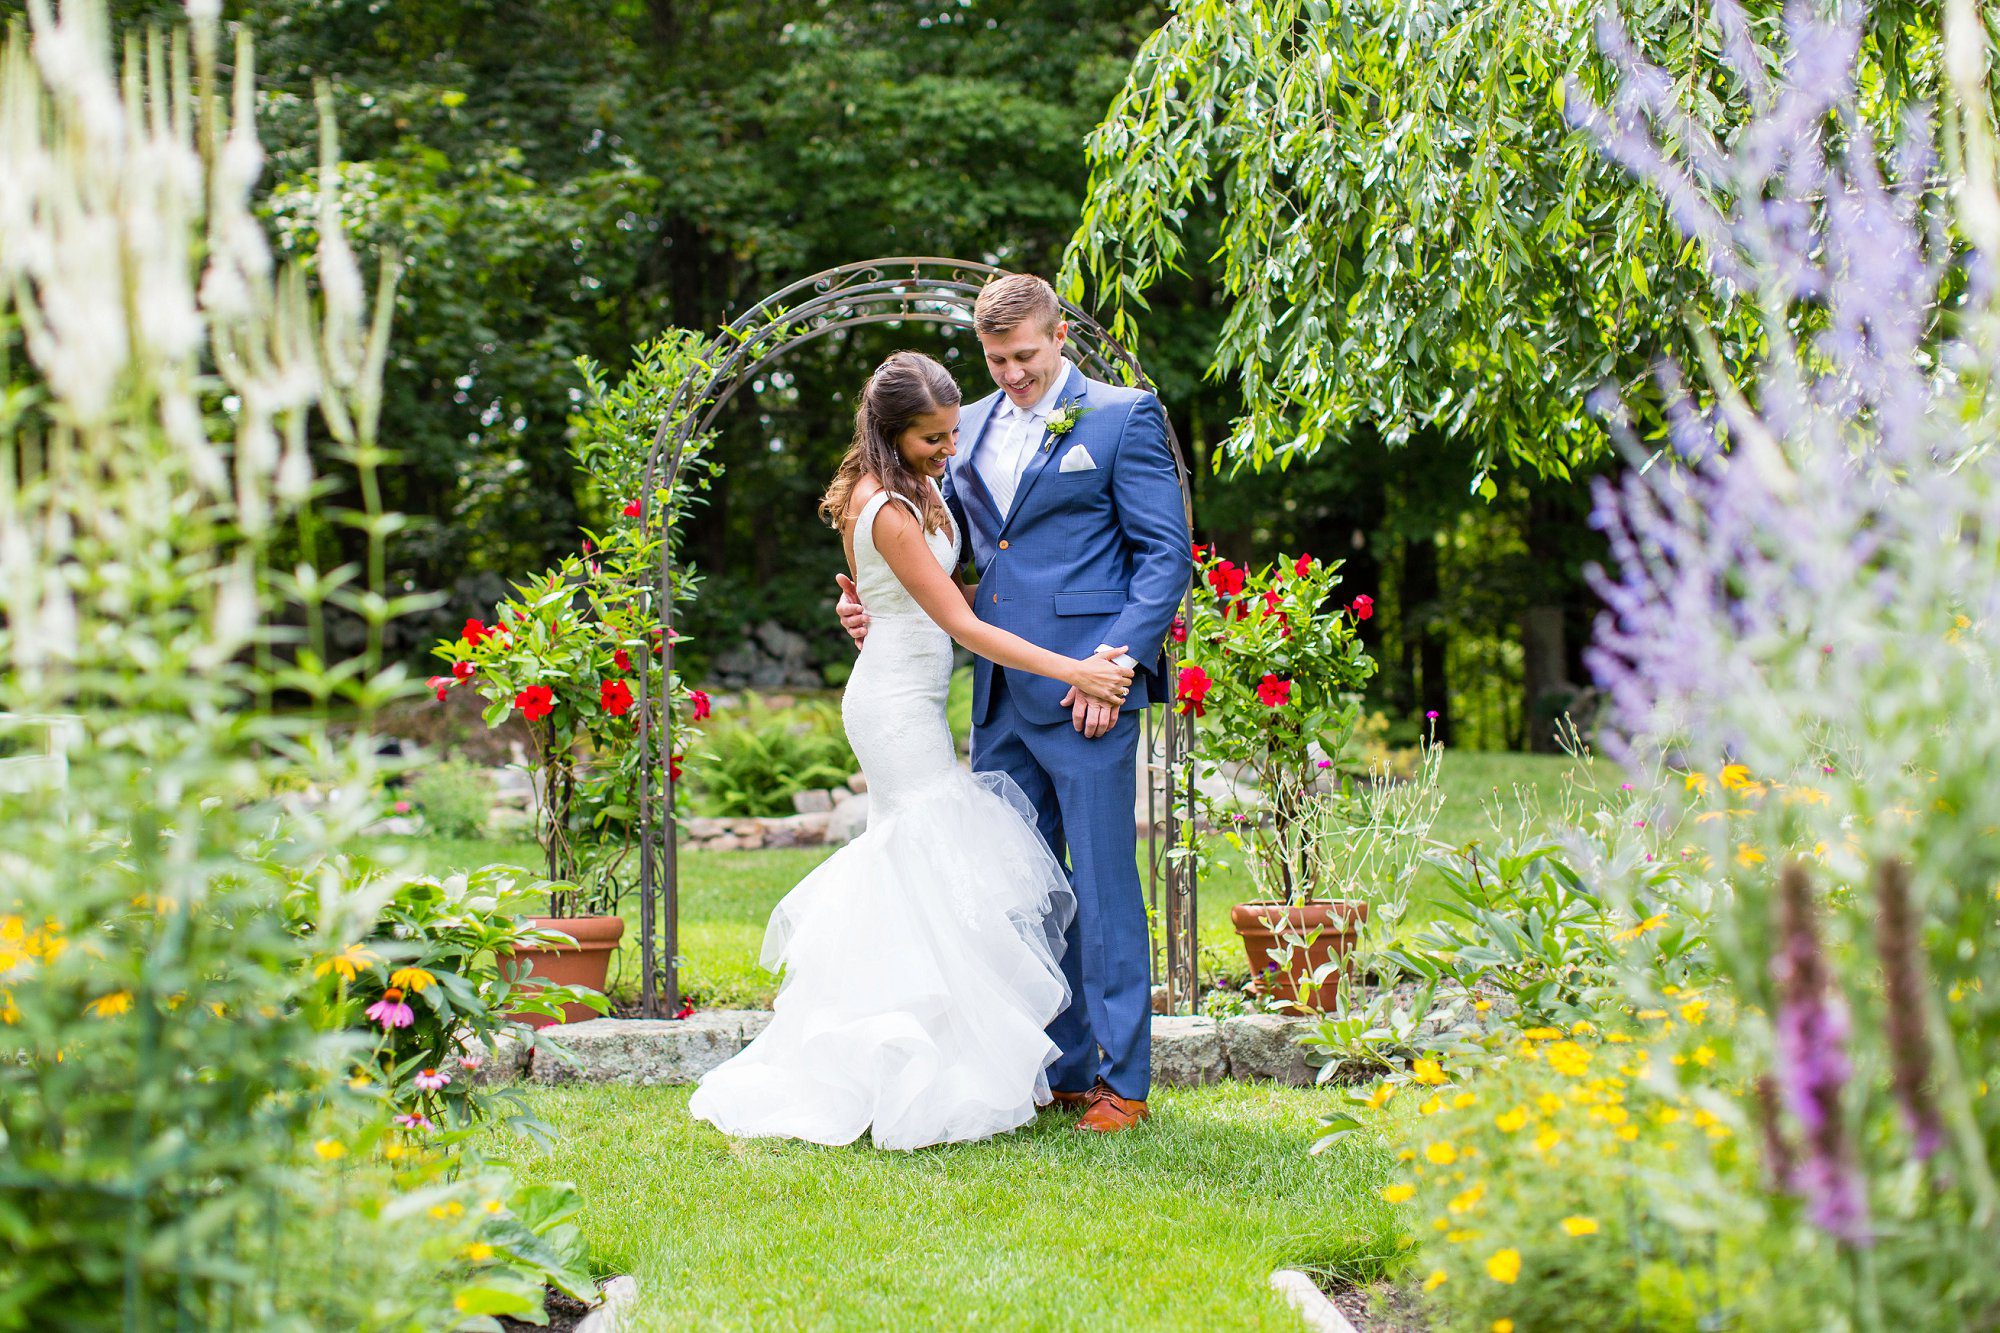 Josias River Farm Wedding | NH ME Photographer | Bride in Monique Lhuillier gown